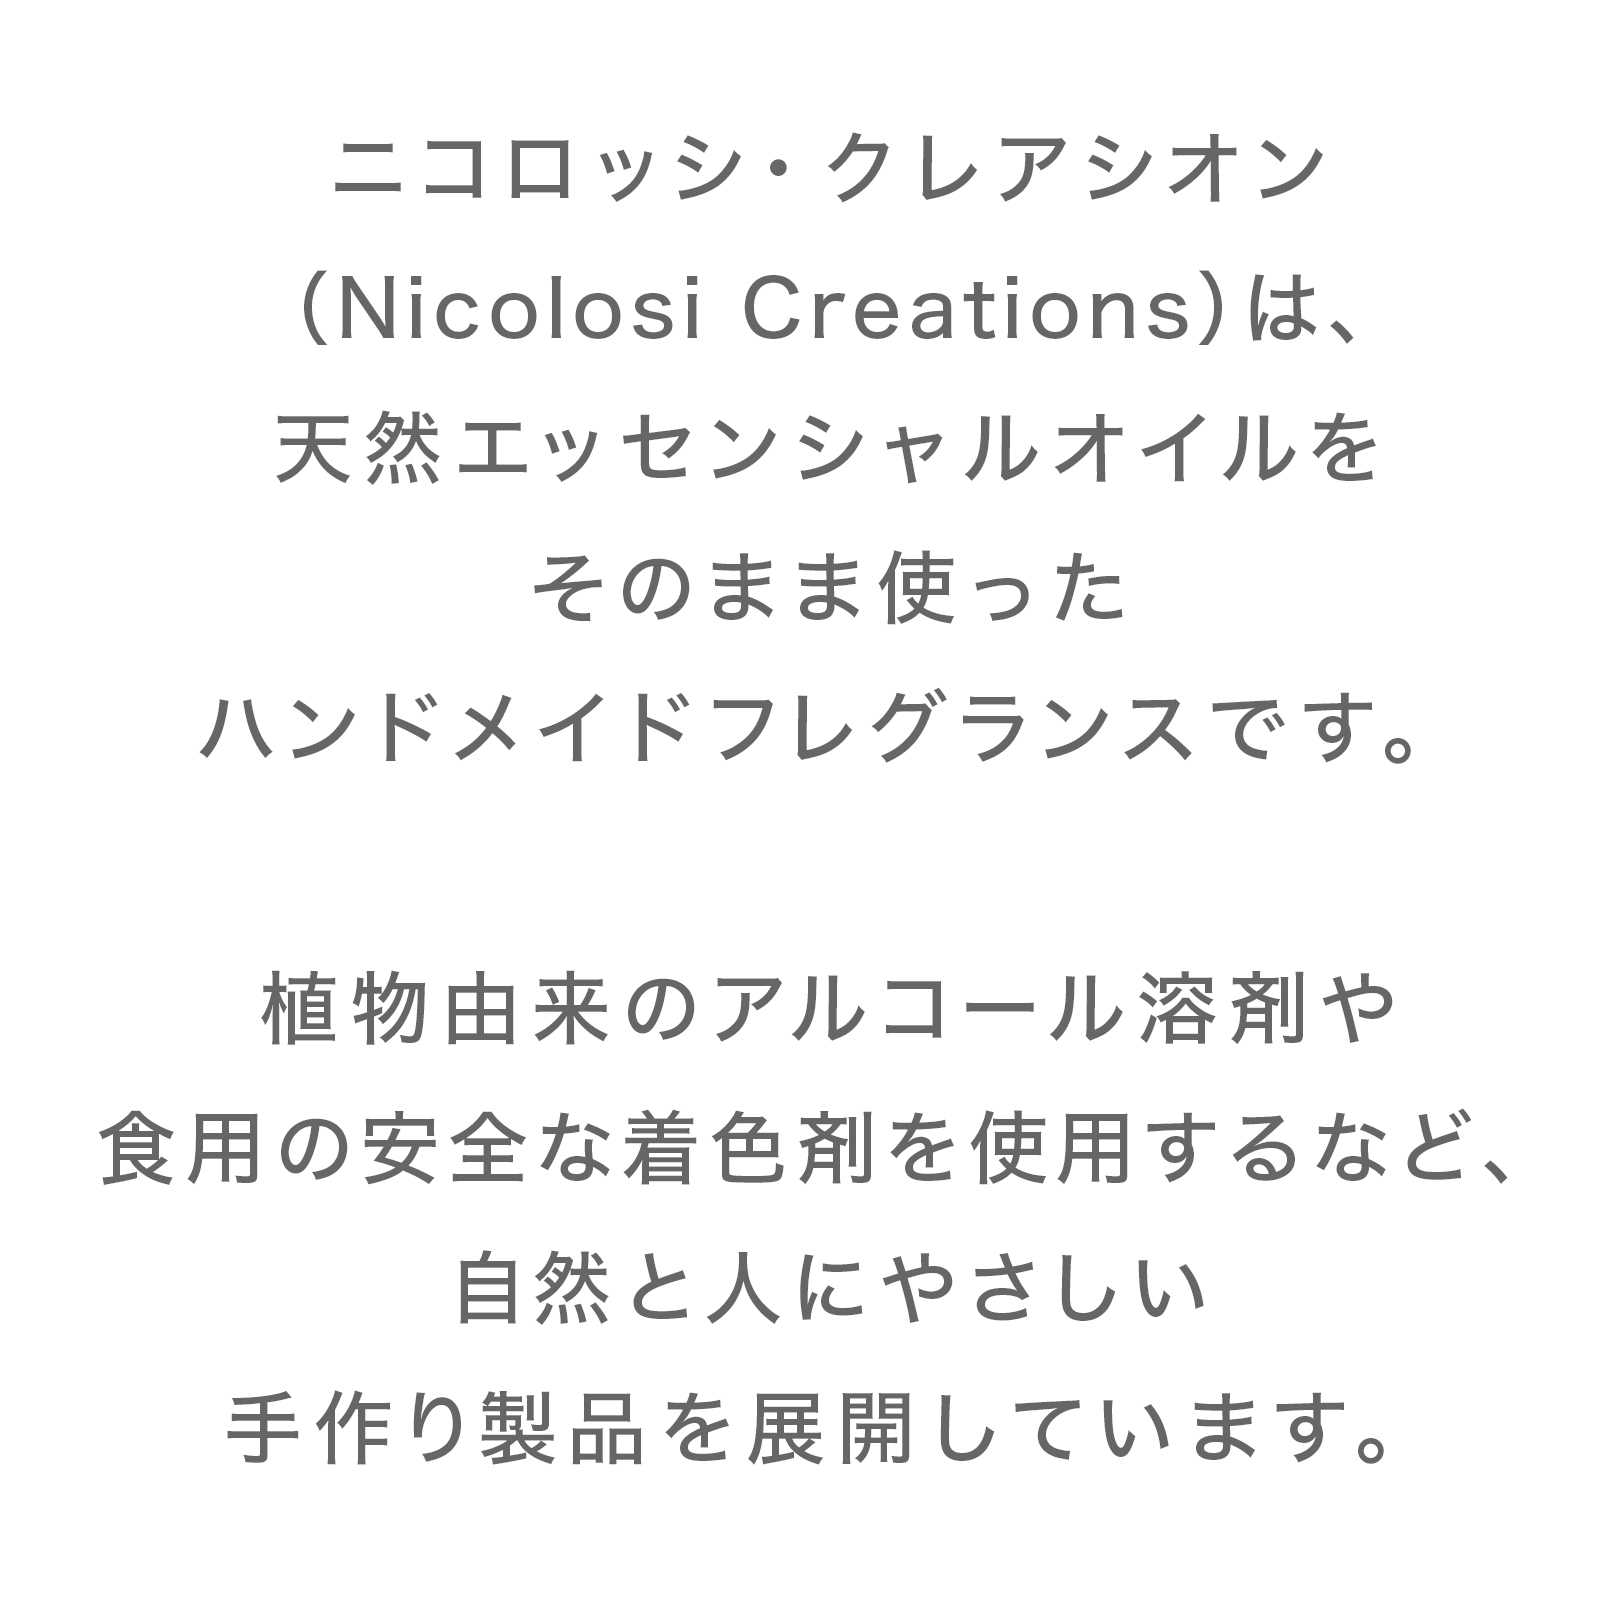 Nicolosi Creations ディフューザー バーベナ